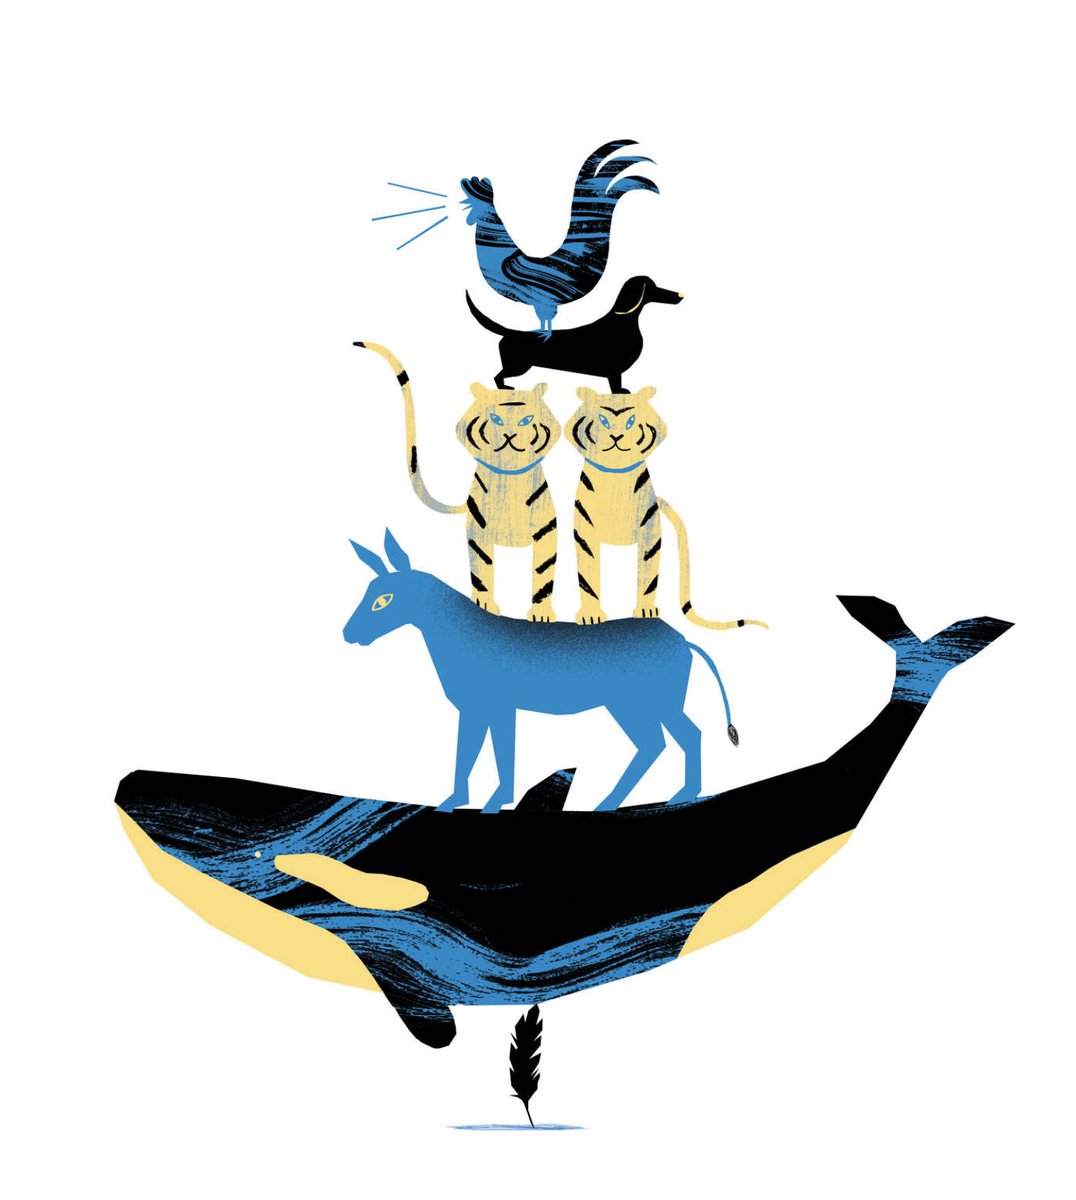 Laura Liedo
Boston Sunday Globe
'On Animals' by Susan Orlean
Chosen Winner - Online Collection American illustration 41
Repost
#lauraliedo #illustration #animals #AI41 #joaniebernsteinartrep joaniebrep.com